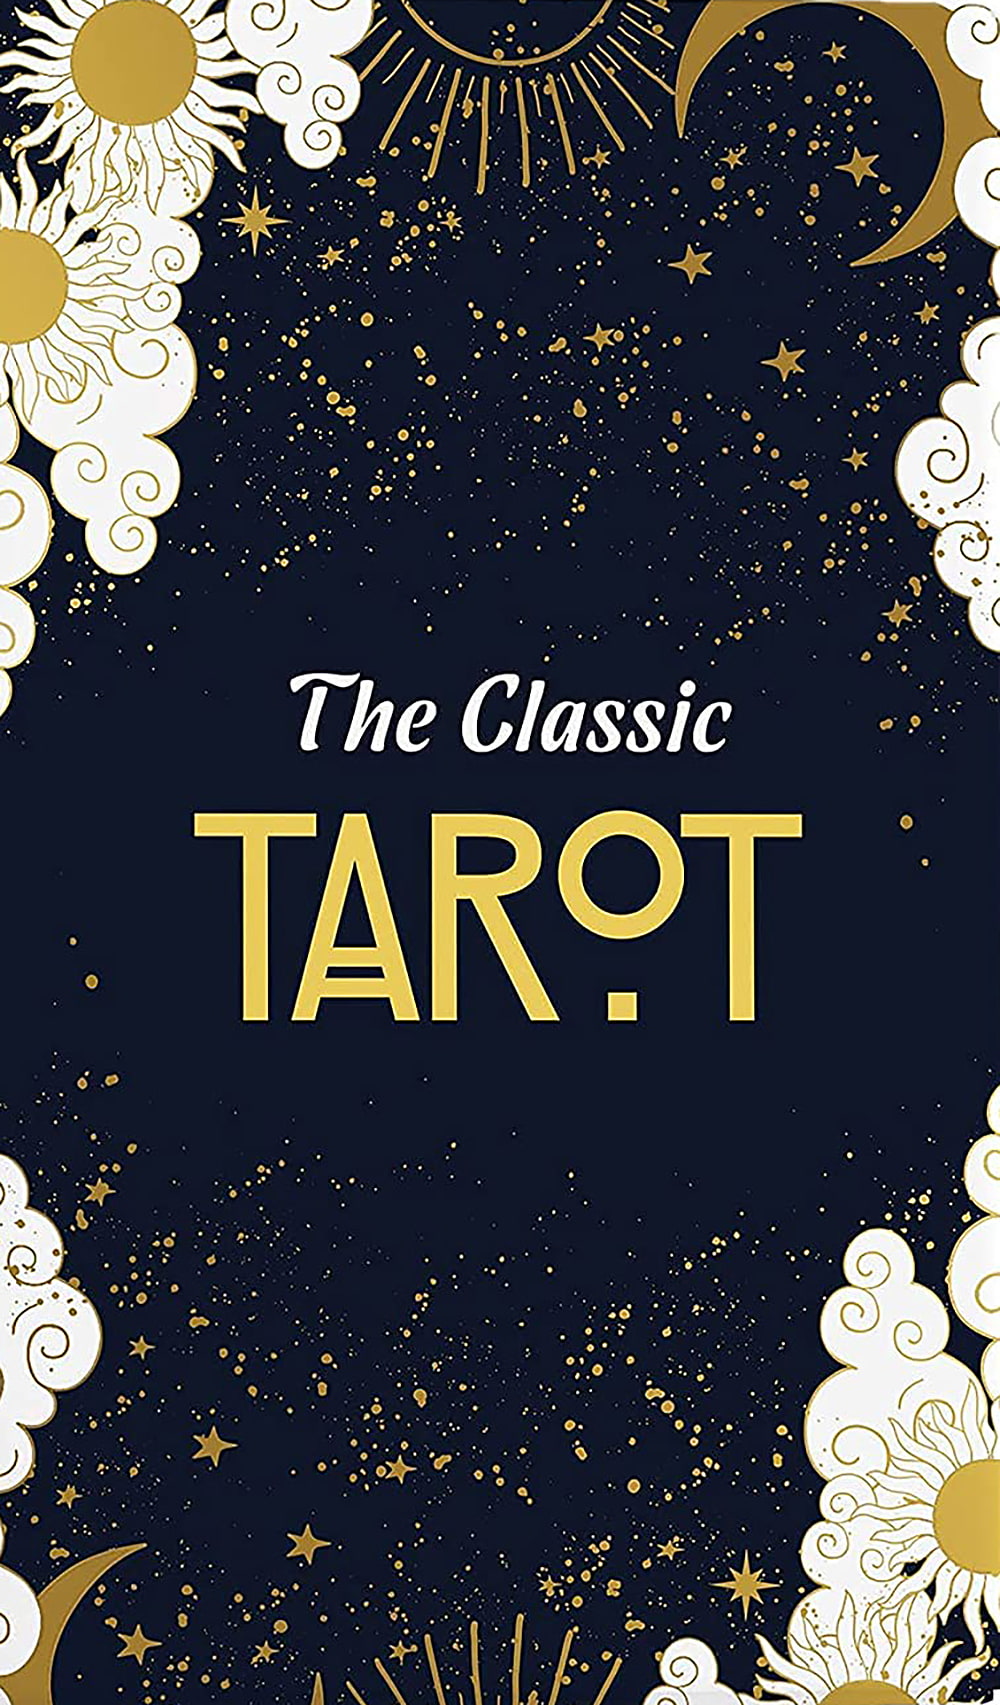 【送料無料】 クラシックタロット アストロロジー黒箱Classic Tarot Astrological Black Box / オラクルカード 占い カード占い AA ルノ